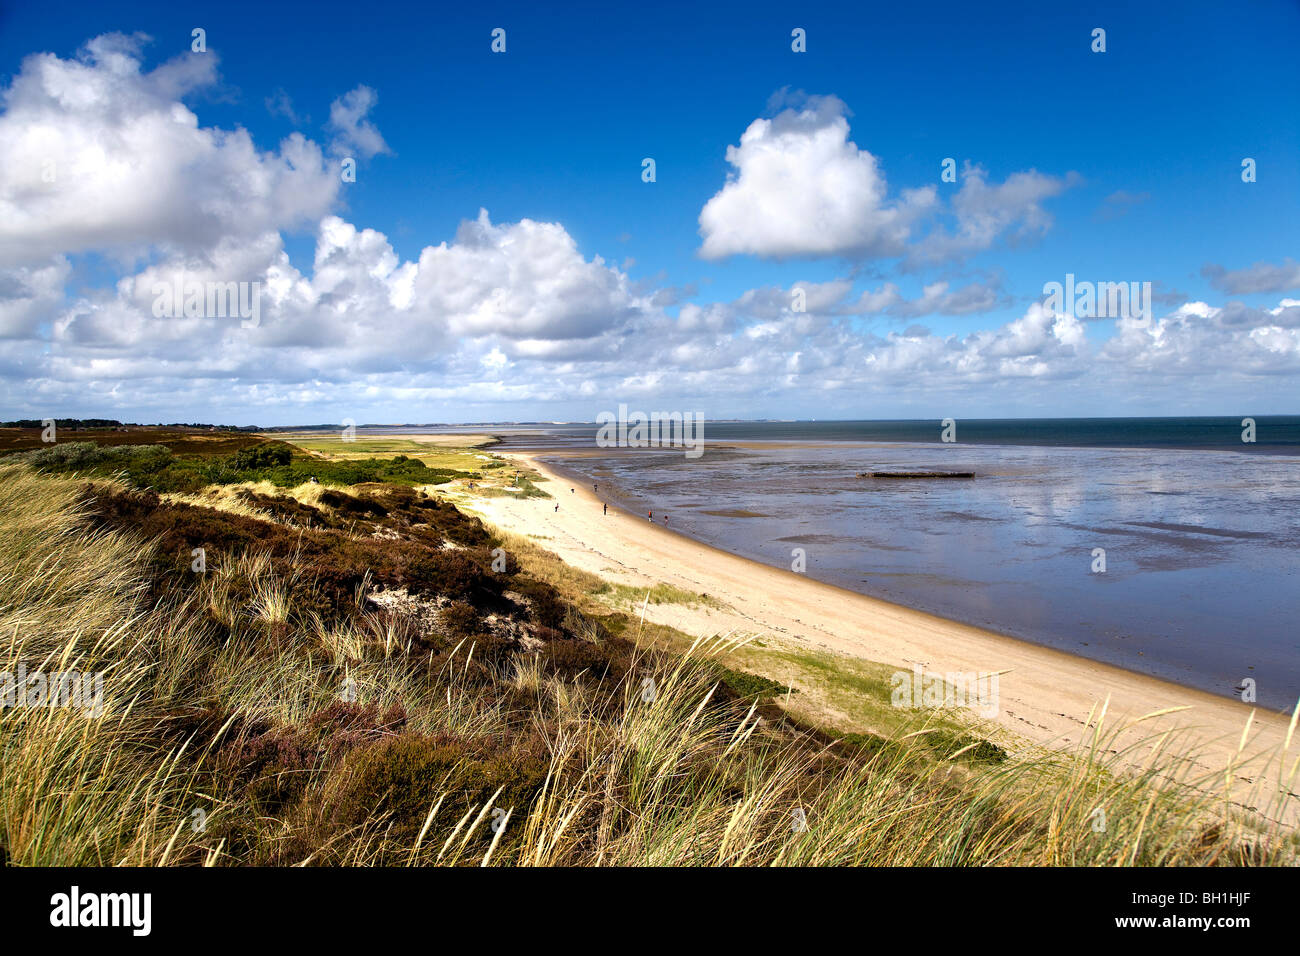 Beach at Braderup heath, Braderup, Sylt Island, Schleswig-Holstein, Germany Stock Photo